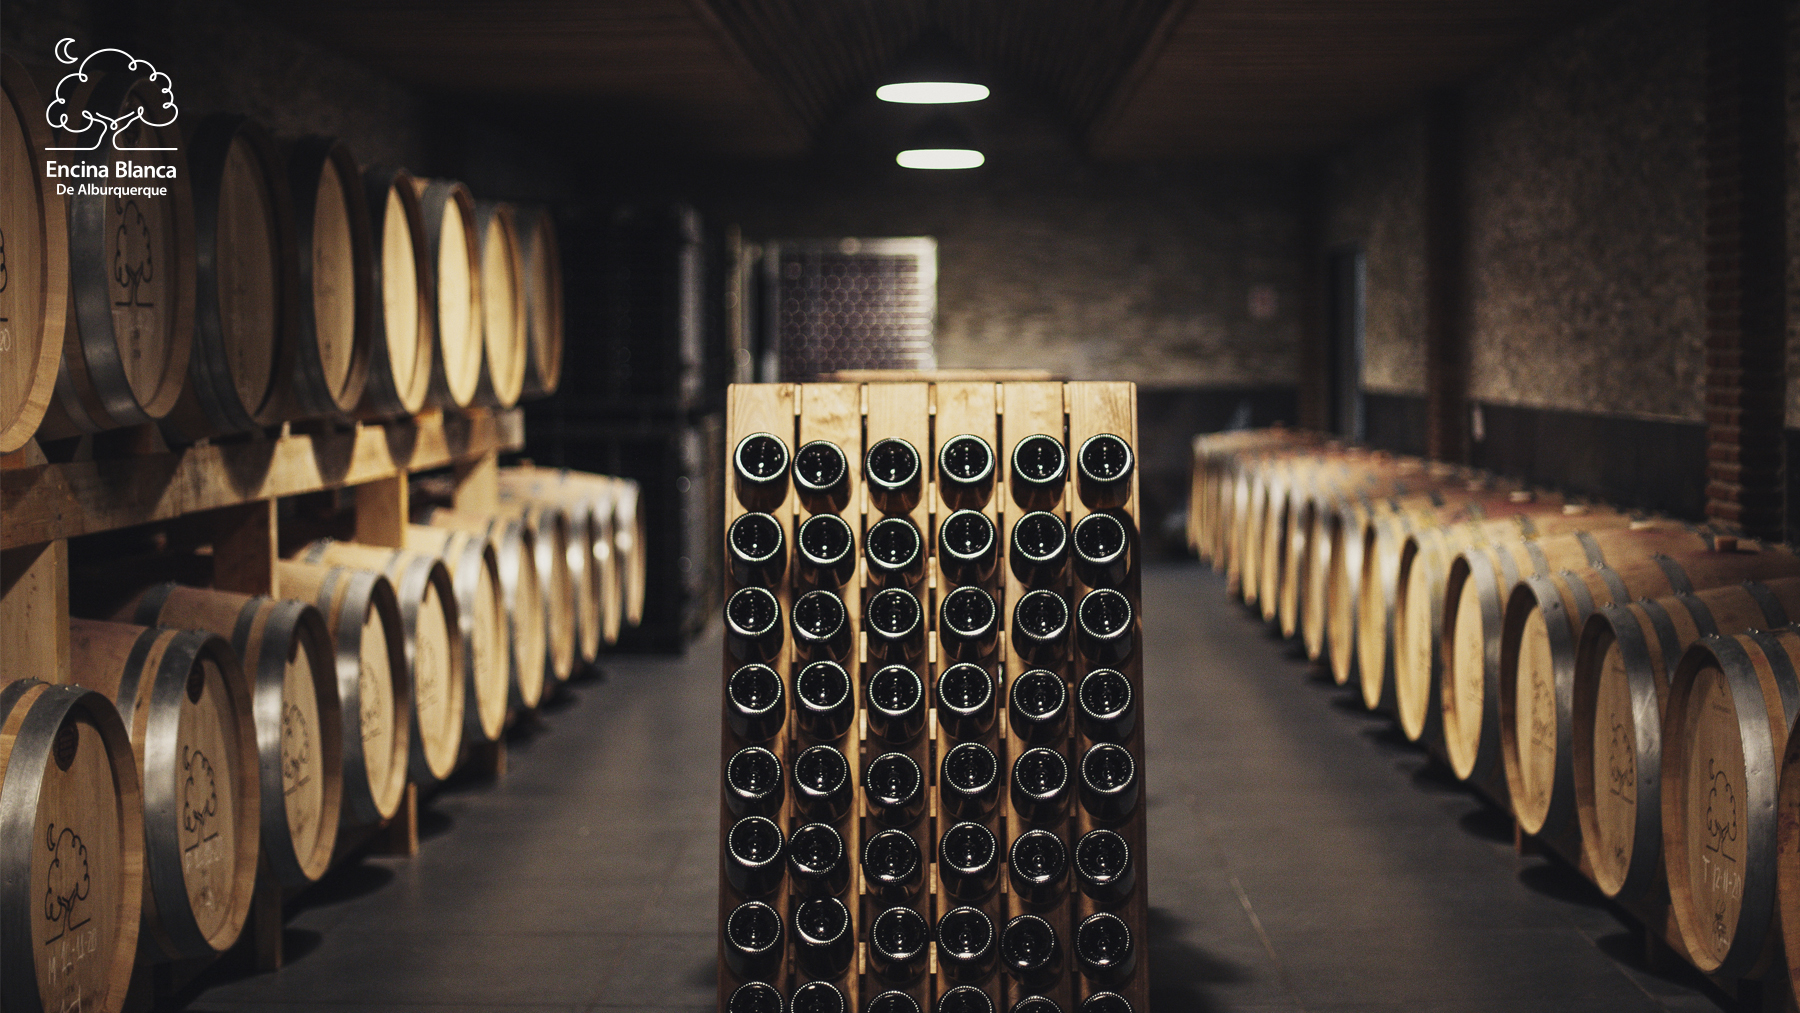 Se pueden ver las botellas de vino encina blanca de alburquerque reposando en la bodega para alcanzar el nivel óptimo de maduración del vino en ellas